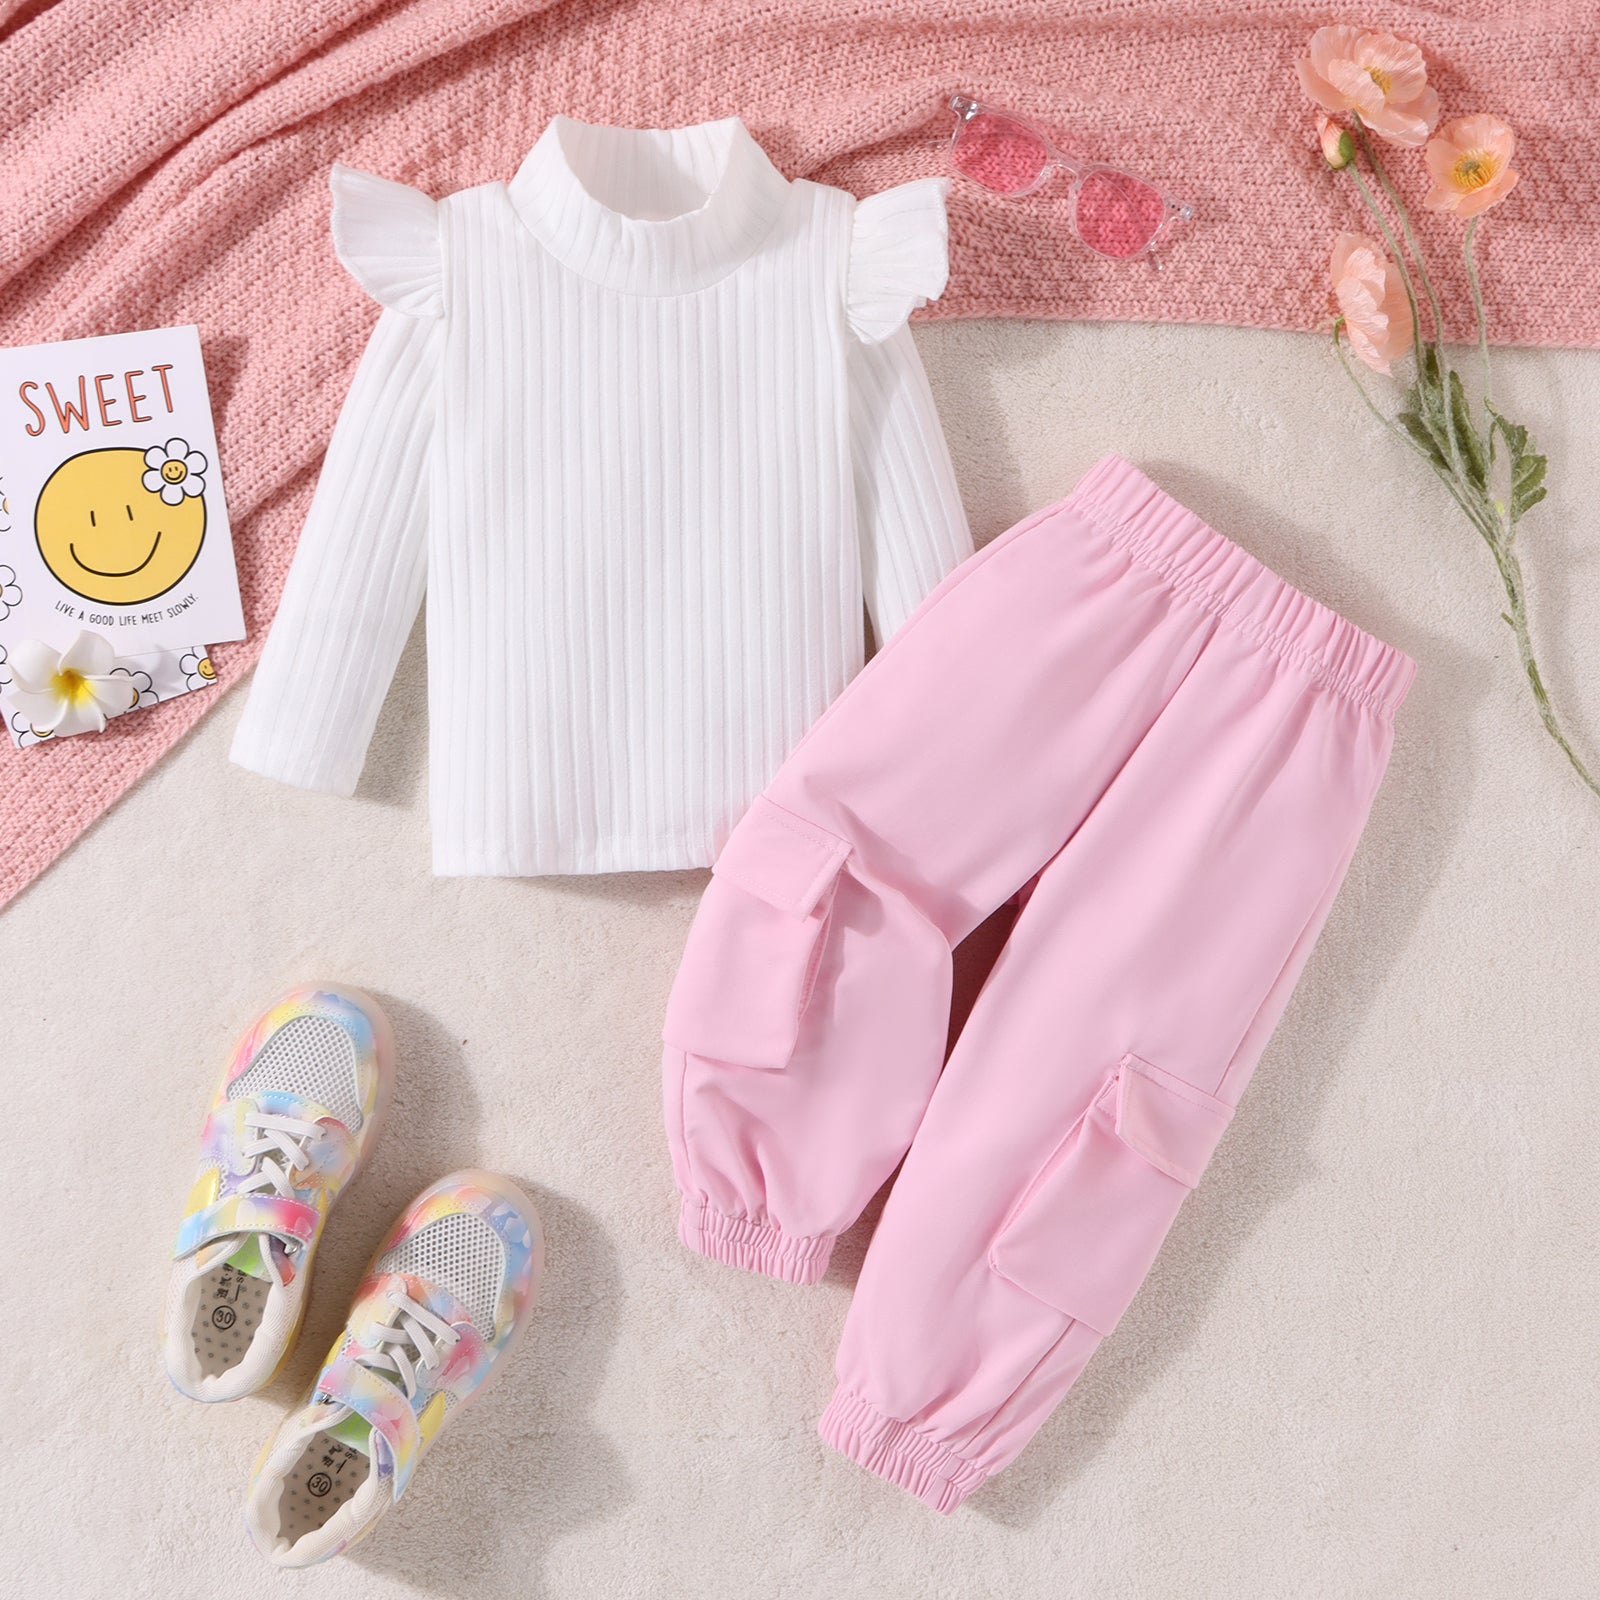 Toddler Pink-White Sets